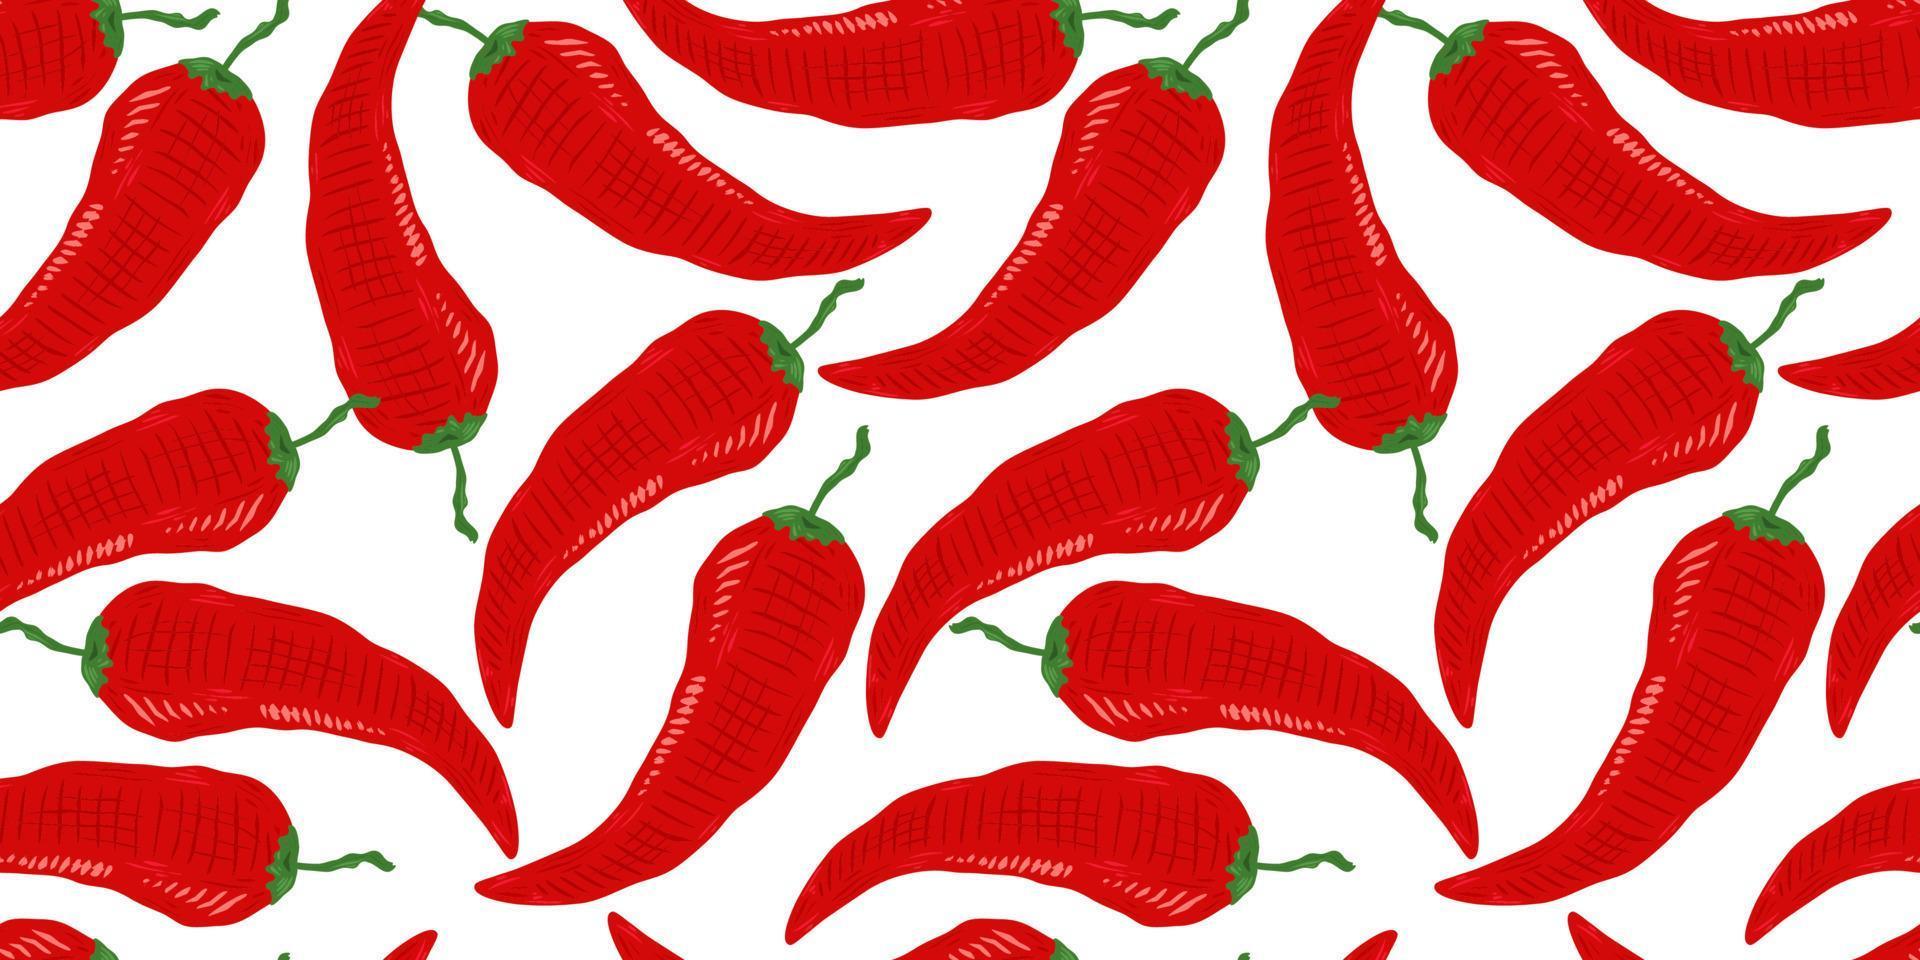 Vektor nahtlose Muster von Vintage-Chili-Muster.